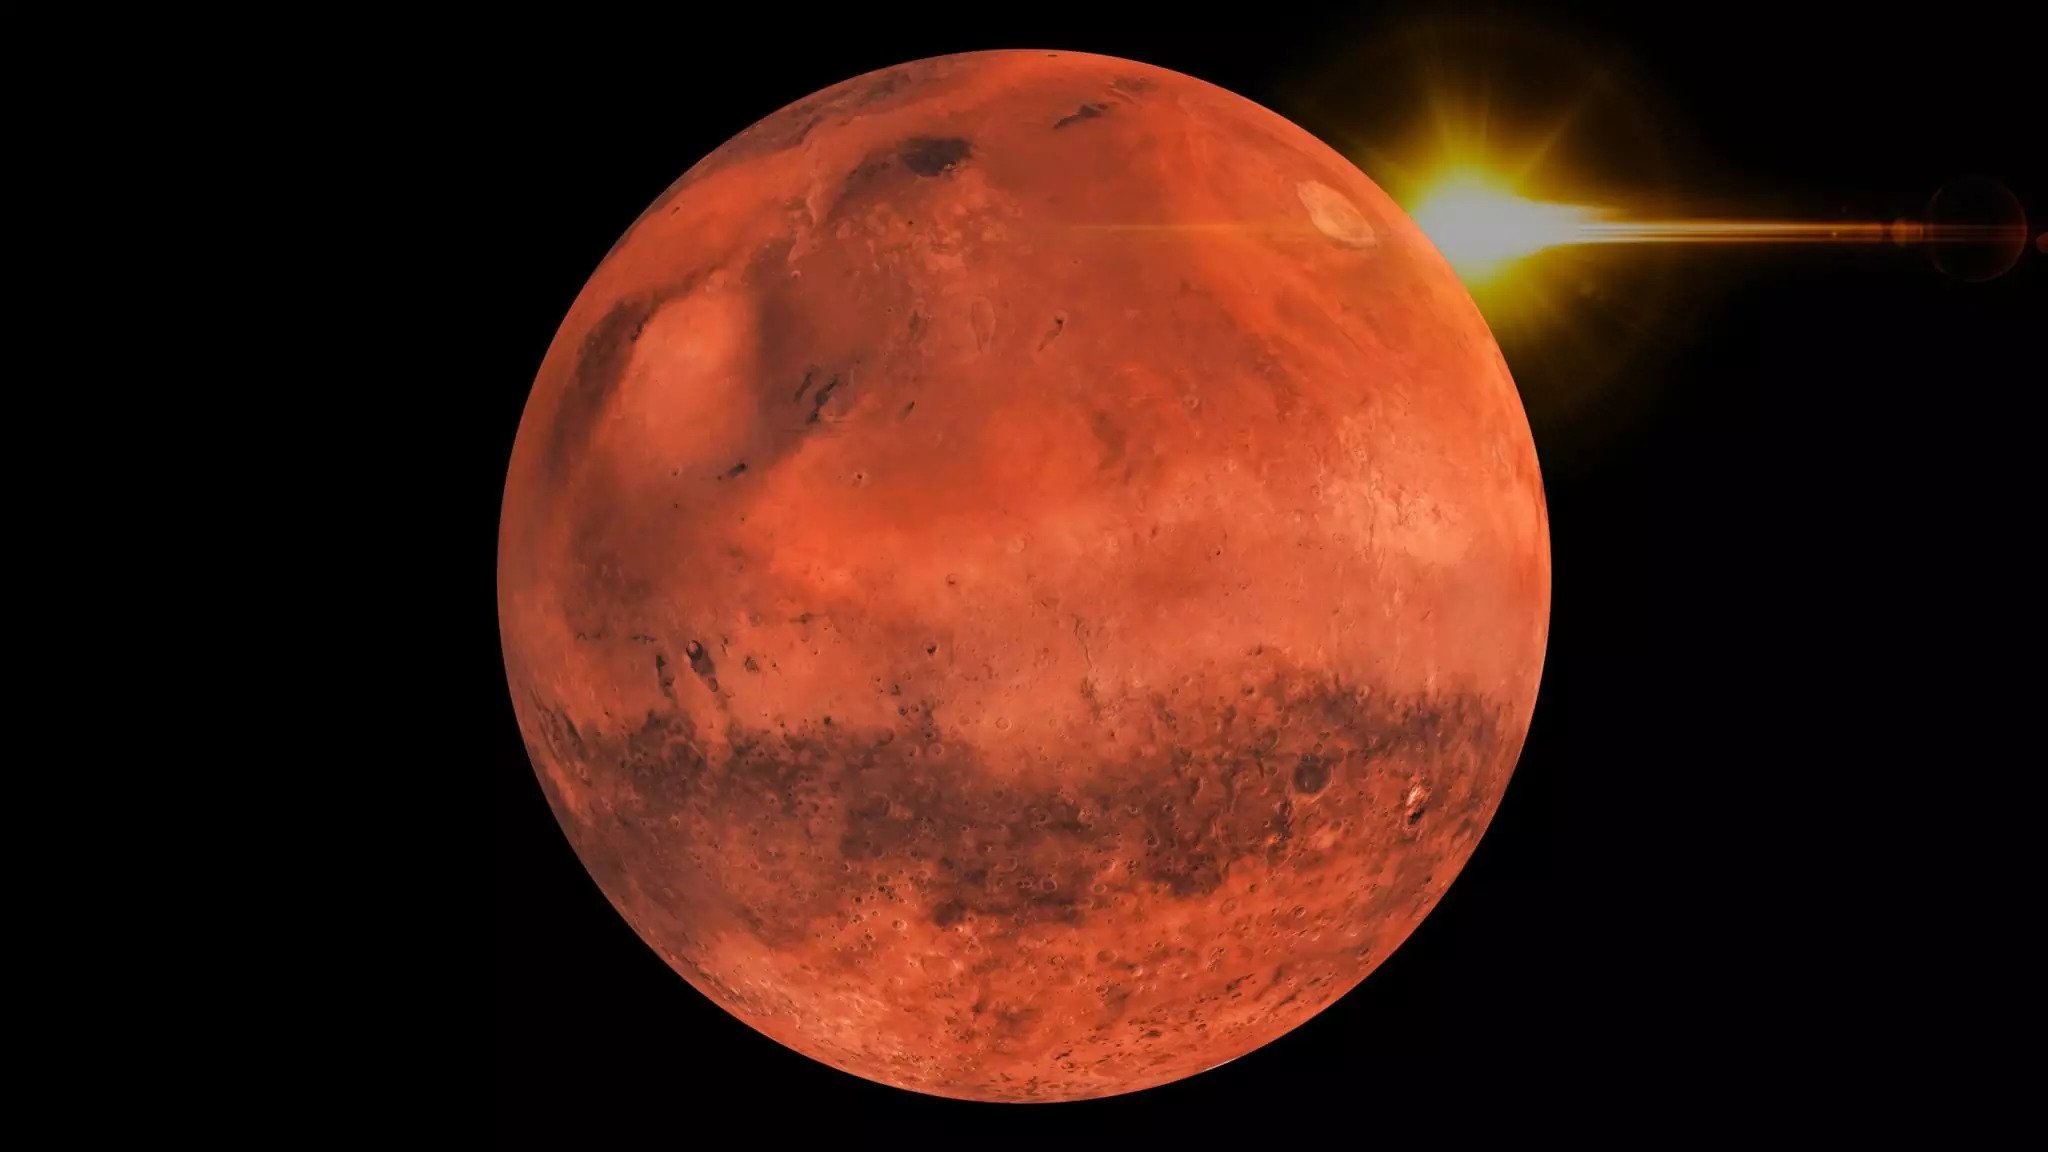 Δεν είναι μόνο οι ΗΠΑ στον Άρη: Το κινεζικό Tianwen 1 έστιλε τις πρώτες του φωτογραφίες από τον «κόκκινο» πλανήτη